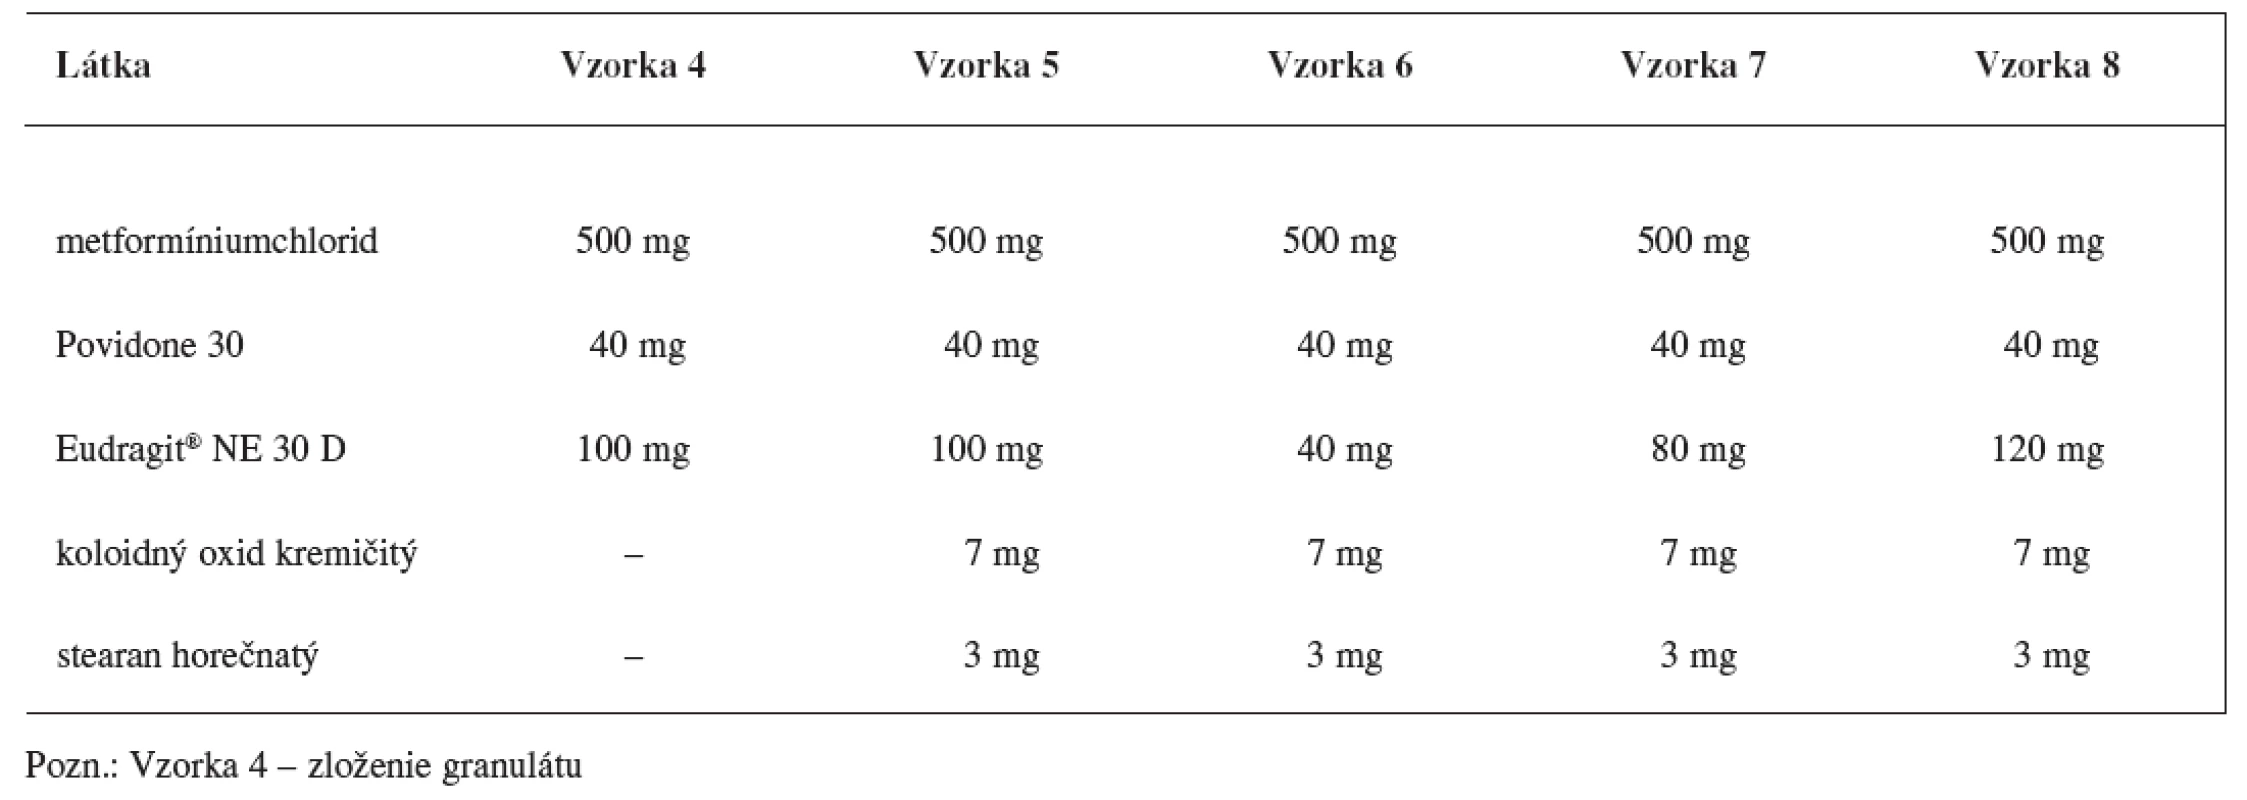 Zloženie matricových tabliet s obsahom metformíniumchloridu